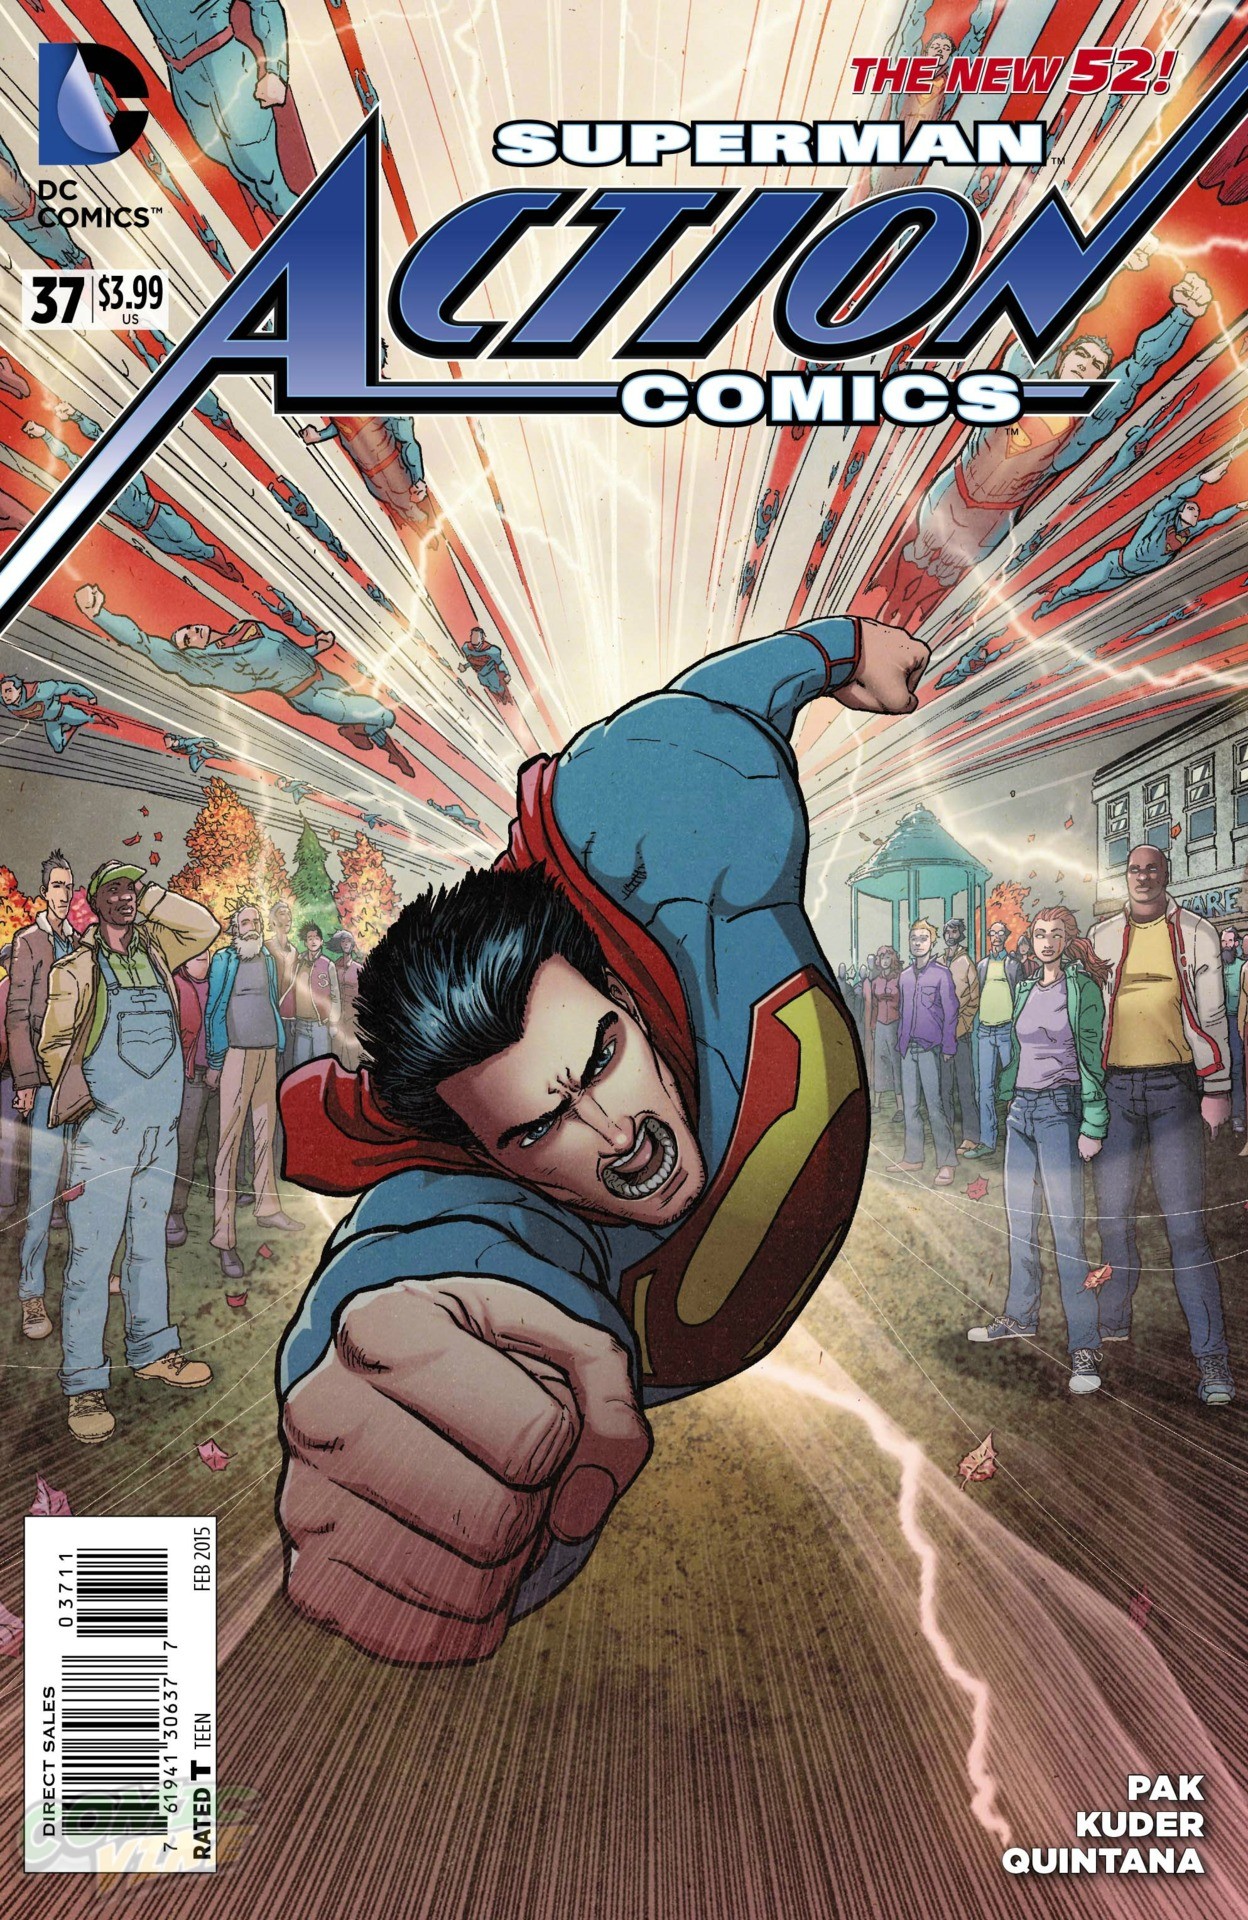 Action Comics Vol. 2 #37